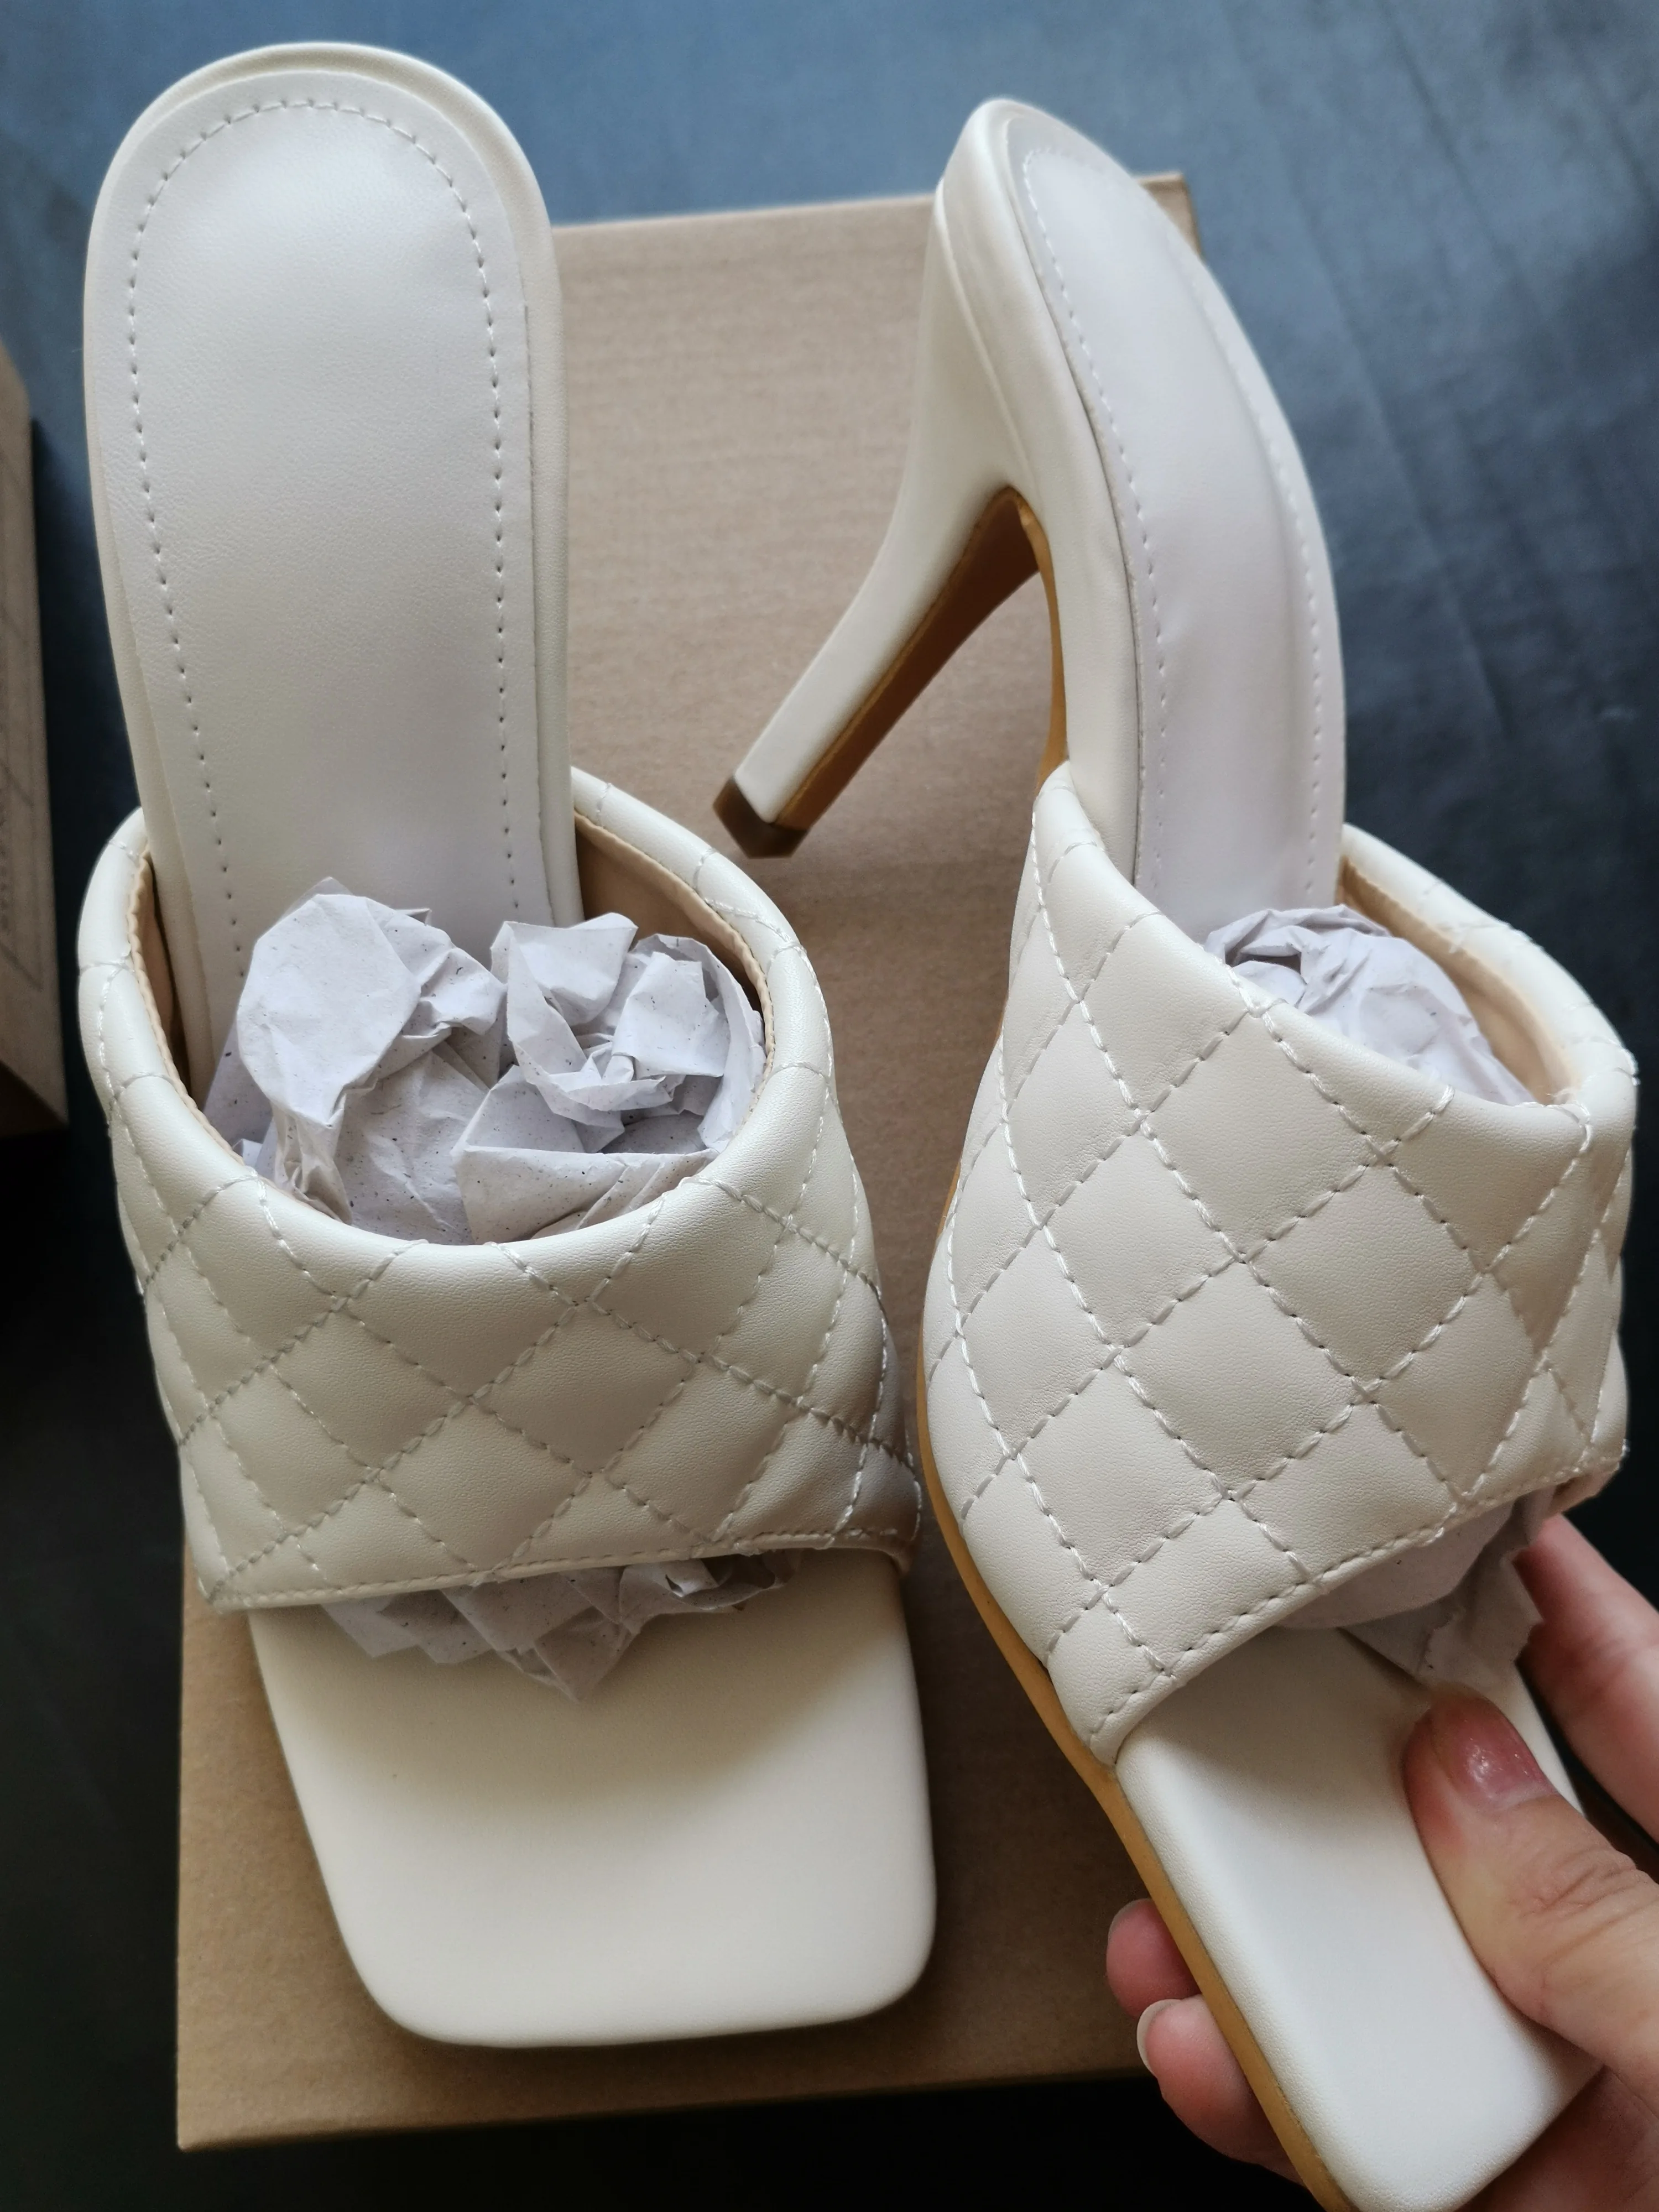 Ladies High Heel Pu Sandals Woman Shoes - Buy High Heel Sandals,Ladies ...